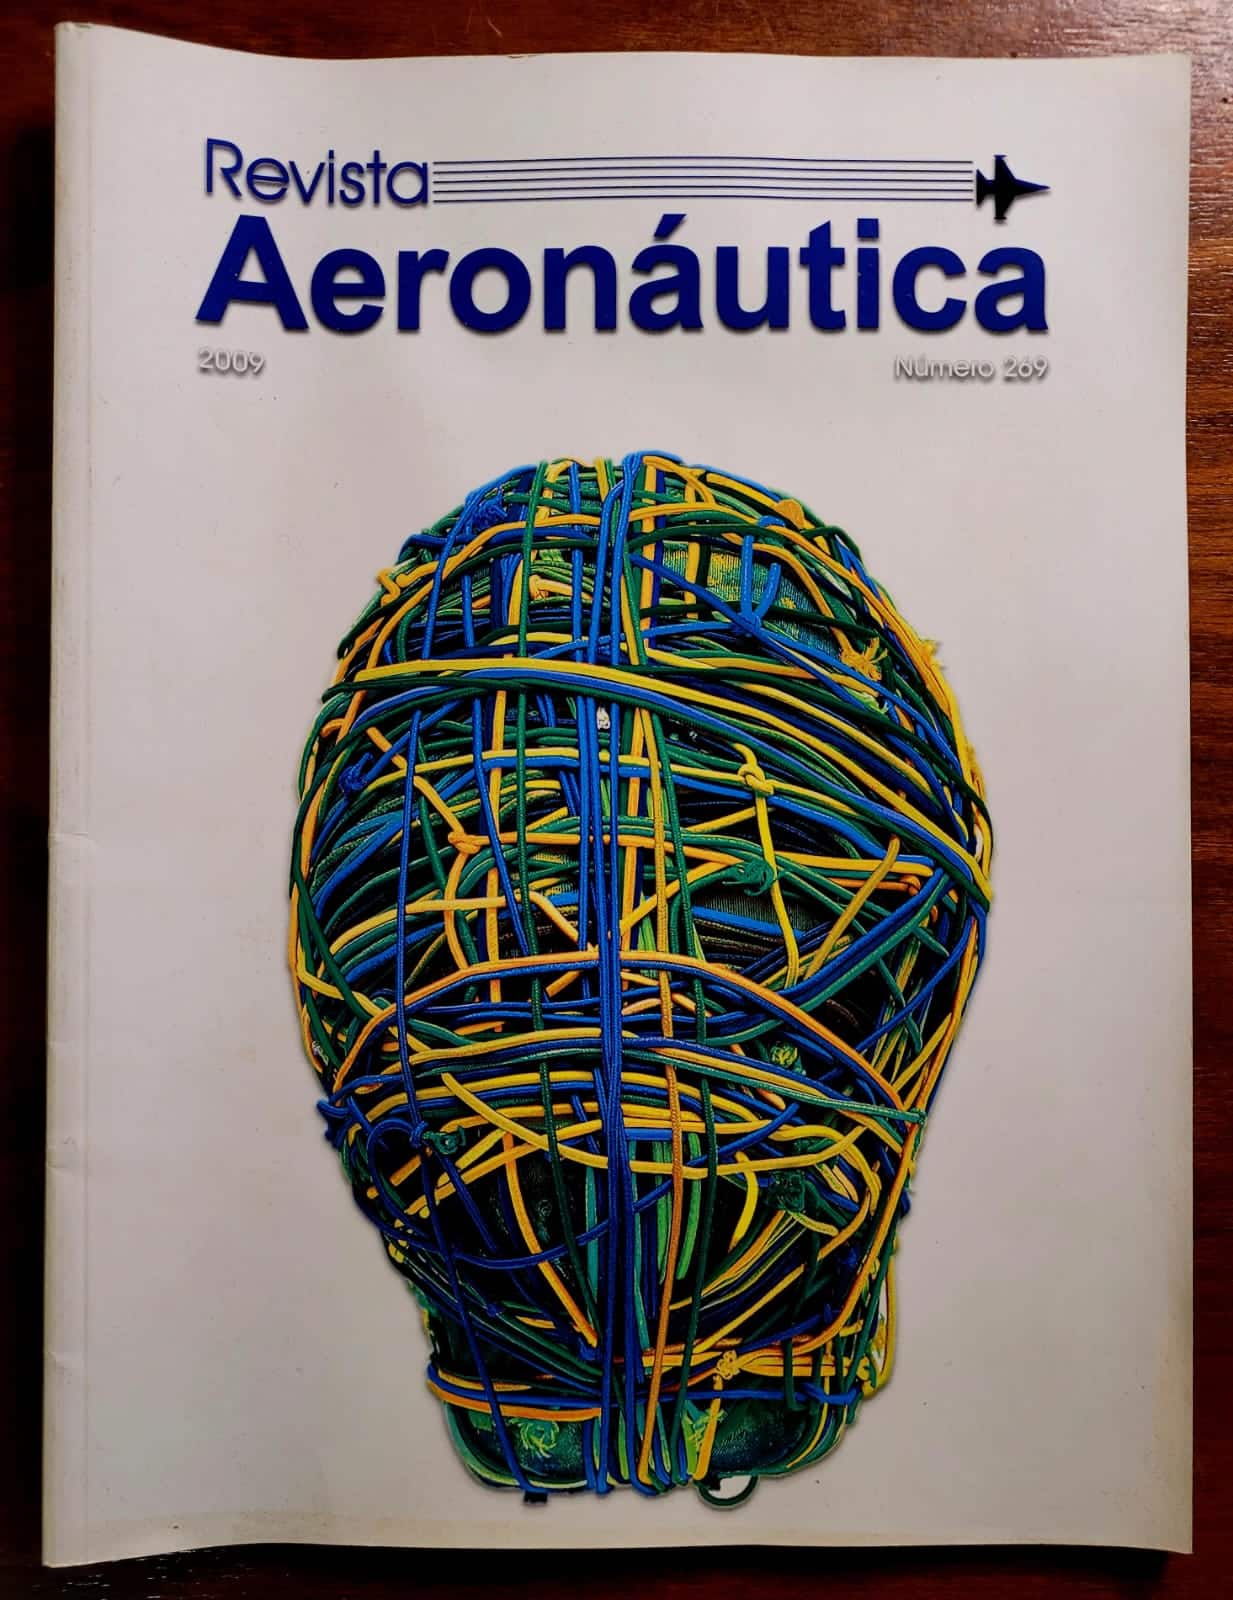 Revista Aeronautica No 269 a Casa do Colecionador